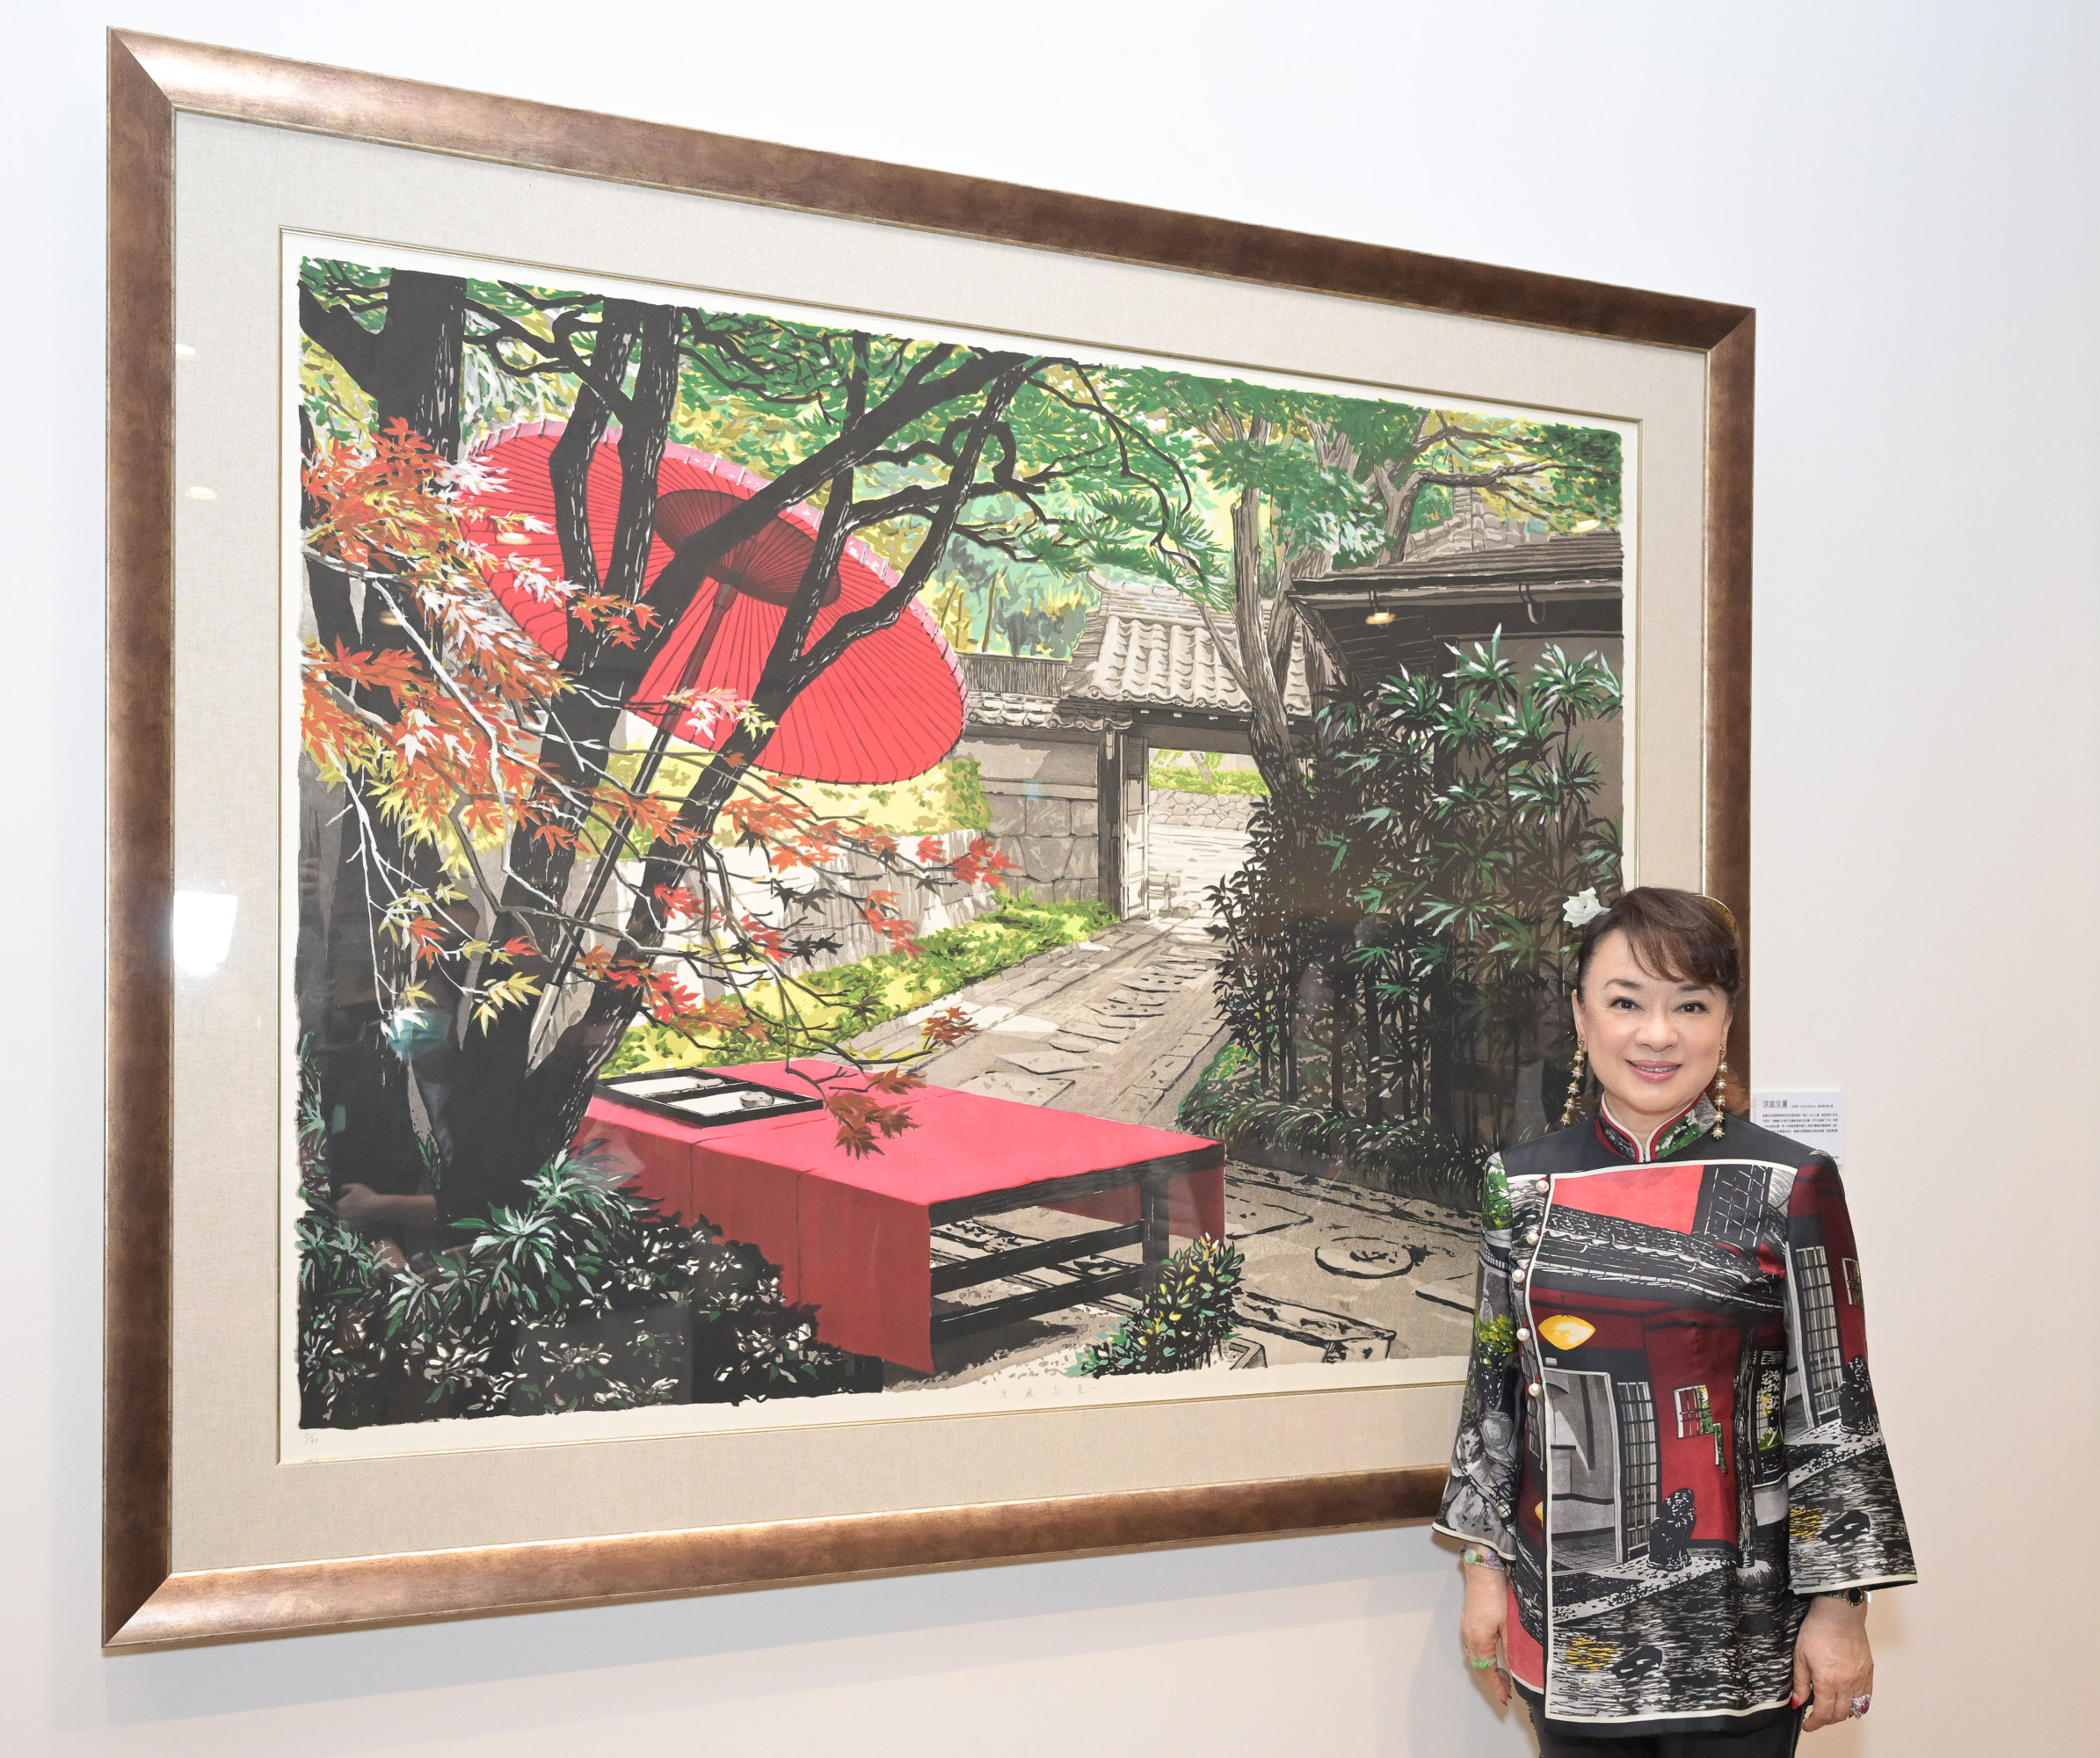 翁倩玉去年底曾在台南美術館舉辦個展。圖/翻攝自台南美術館網站